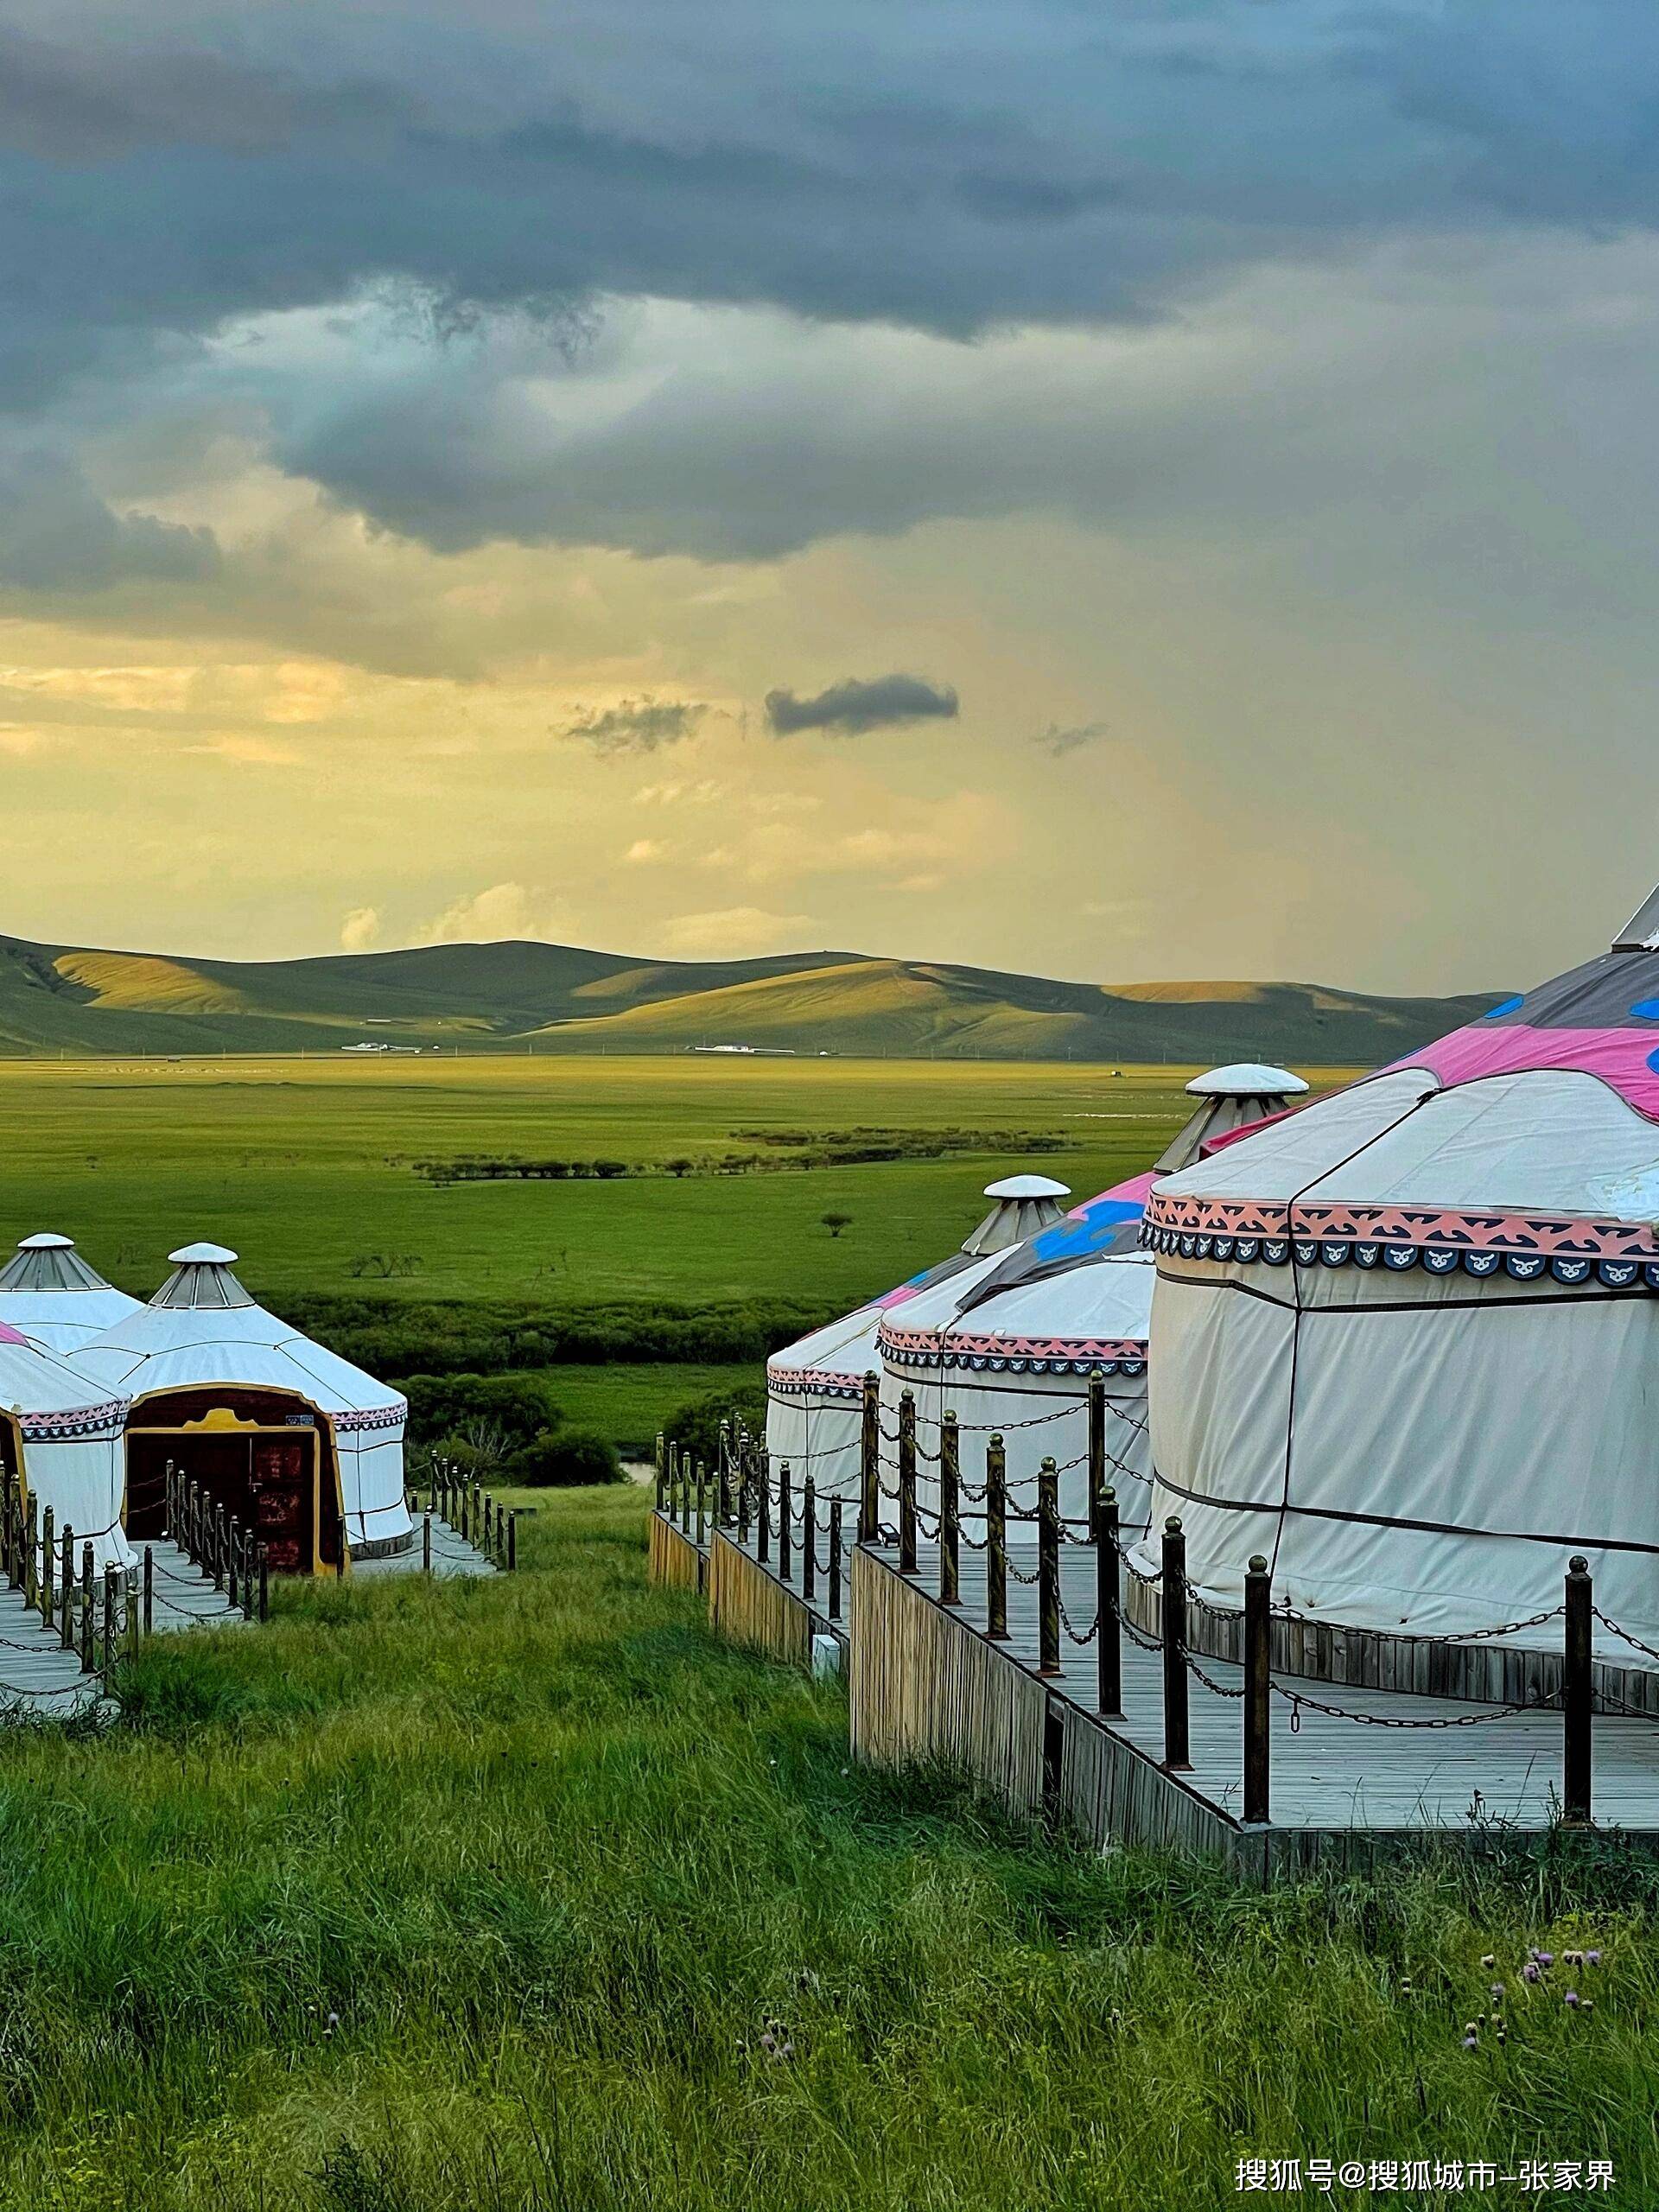 暑假跟朋友去内蒙古五天四晚要花多少钱,内蒙古旅行行程避坑攻略篇!